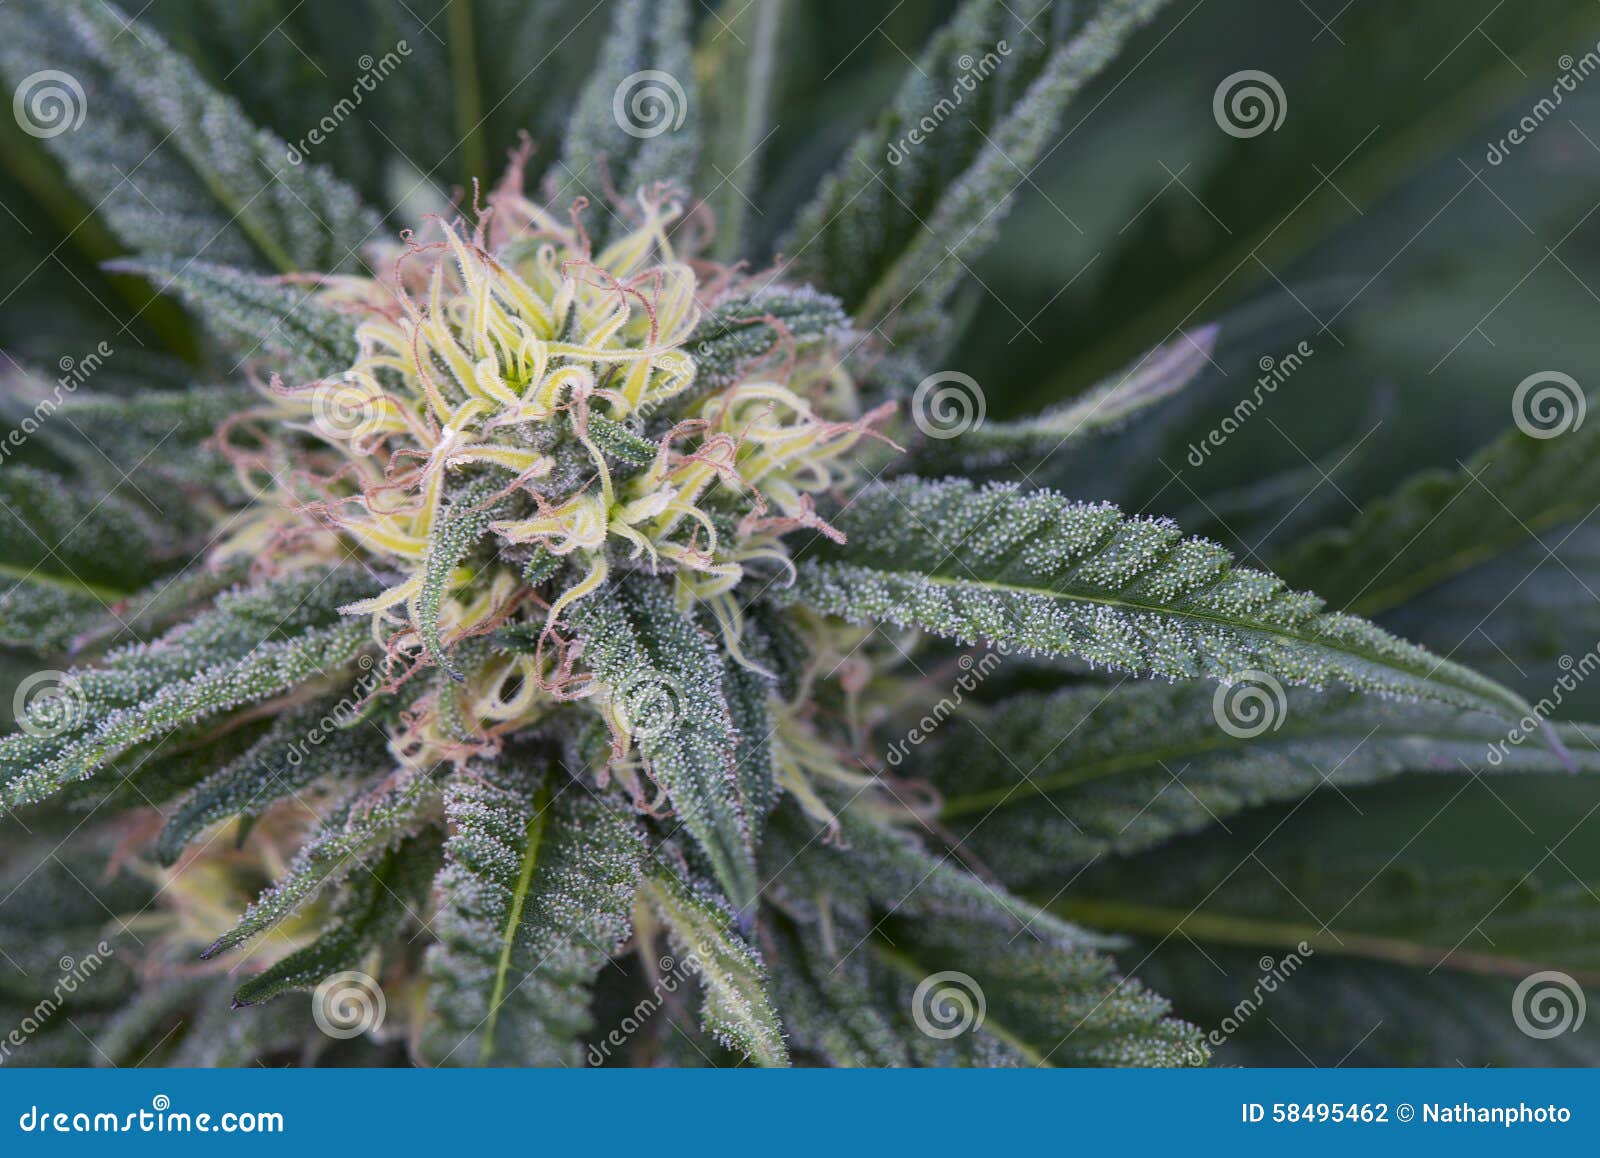 Цветок марихуаны фото как полезно курить коноплю